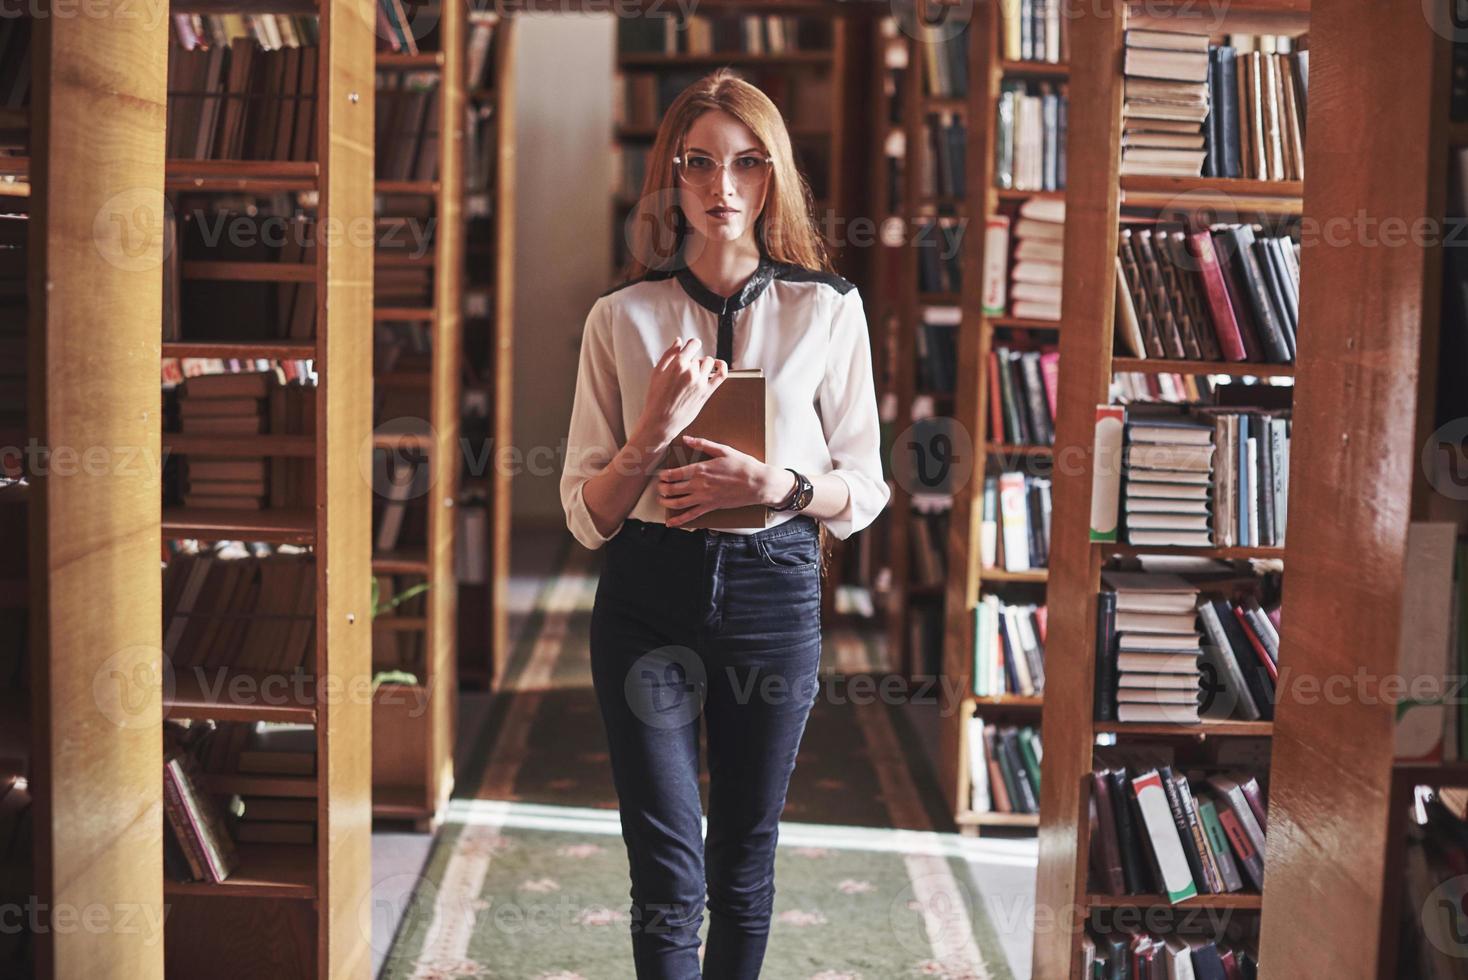 junge attraktive Studentenbibliothekarin, die ein Buch zwischen den Bücherregalen der Bibliothek liest foto